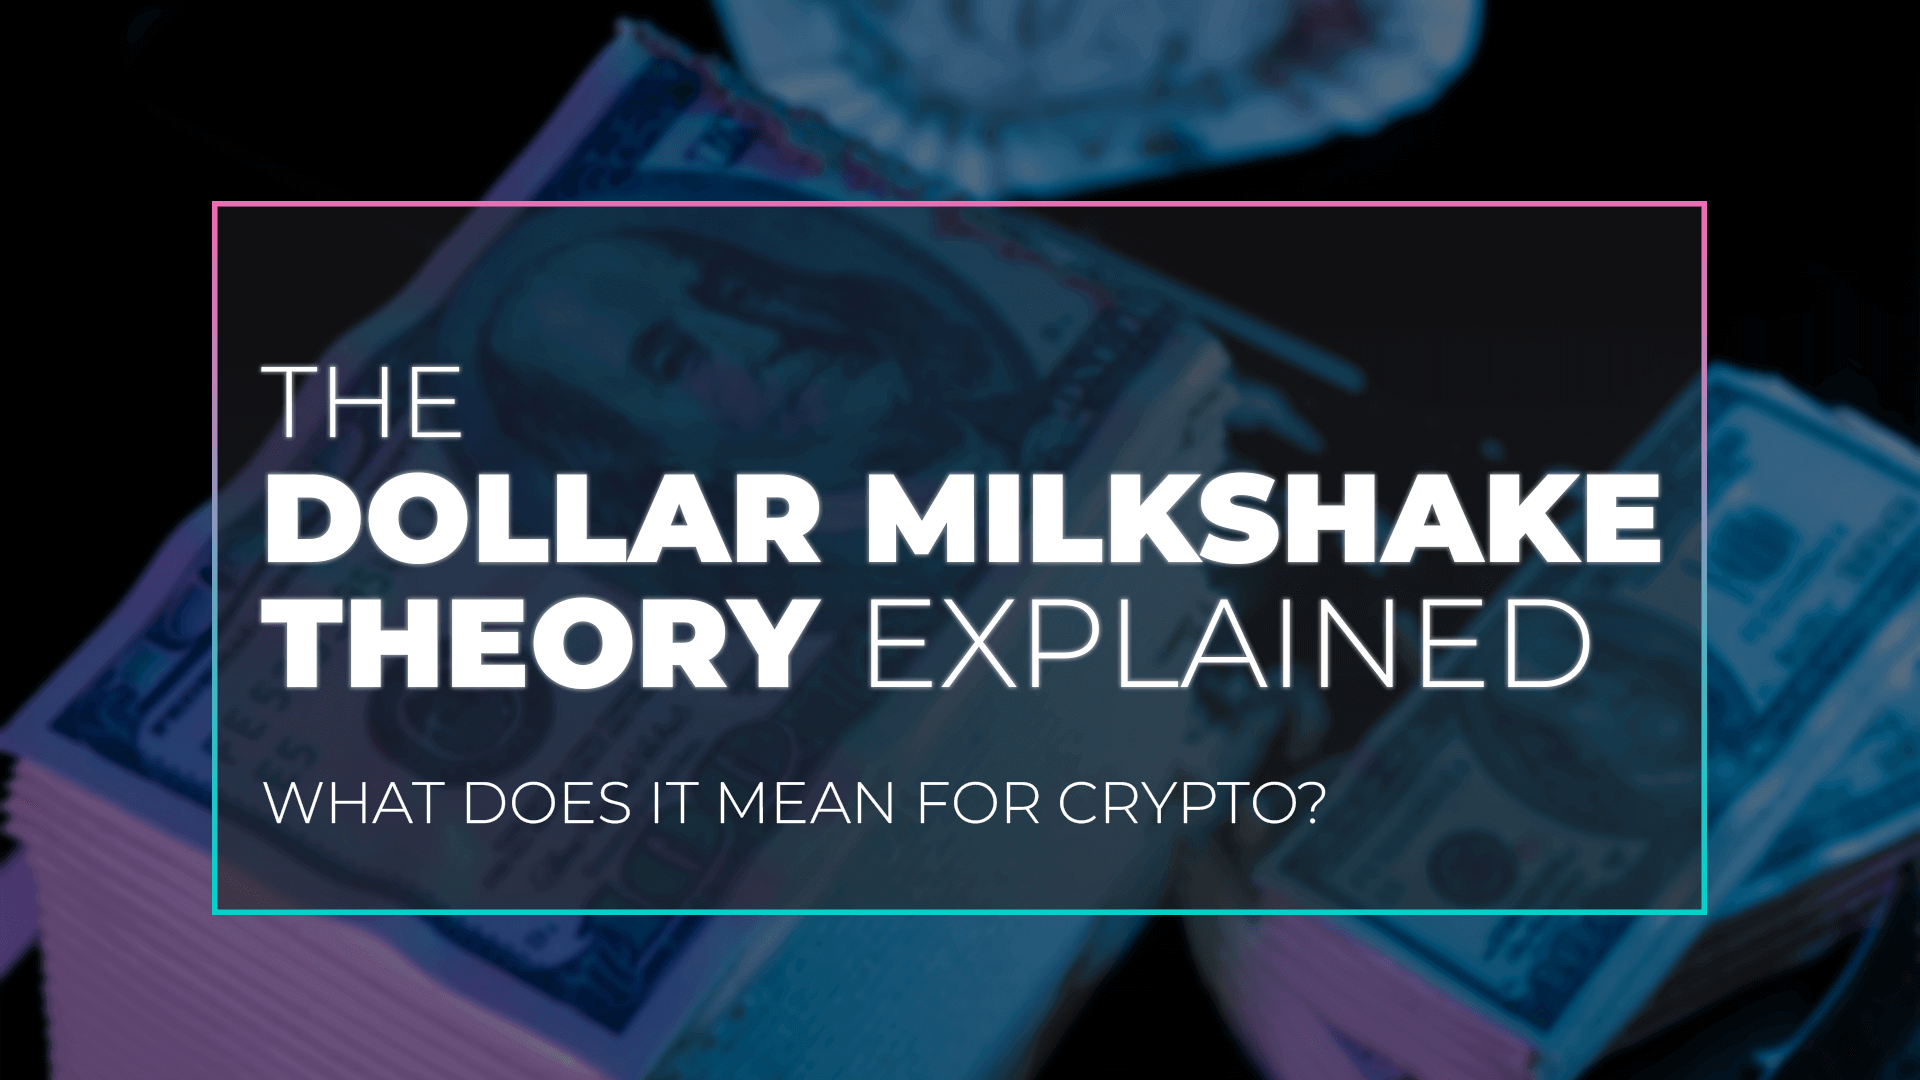 The Dollar Milkshake Theory Explained